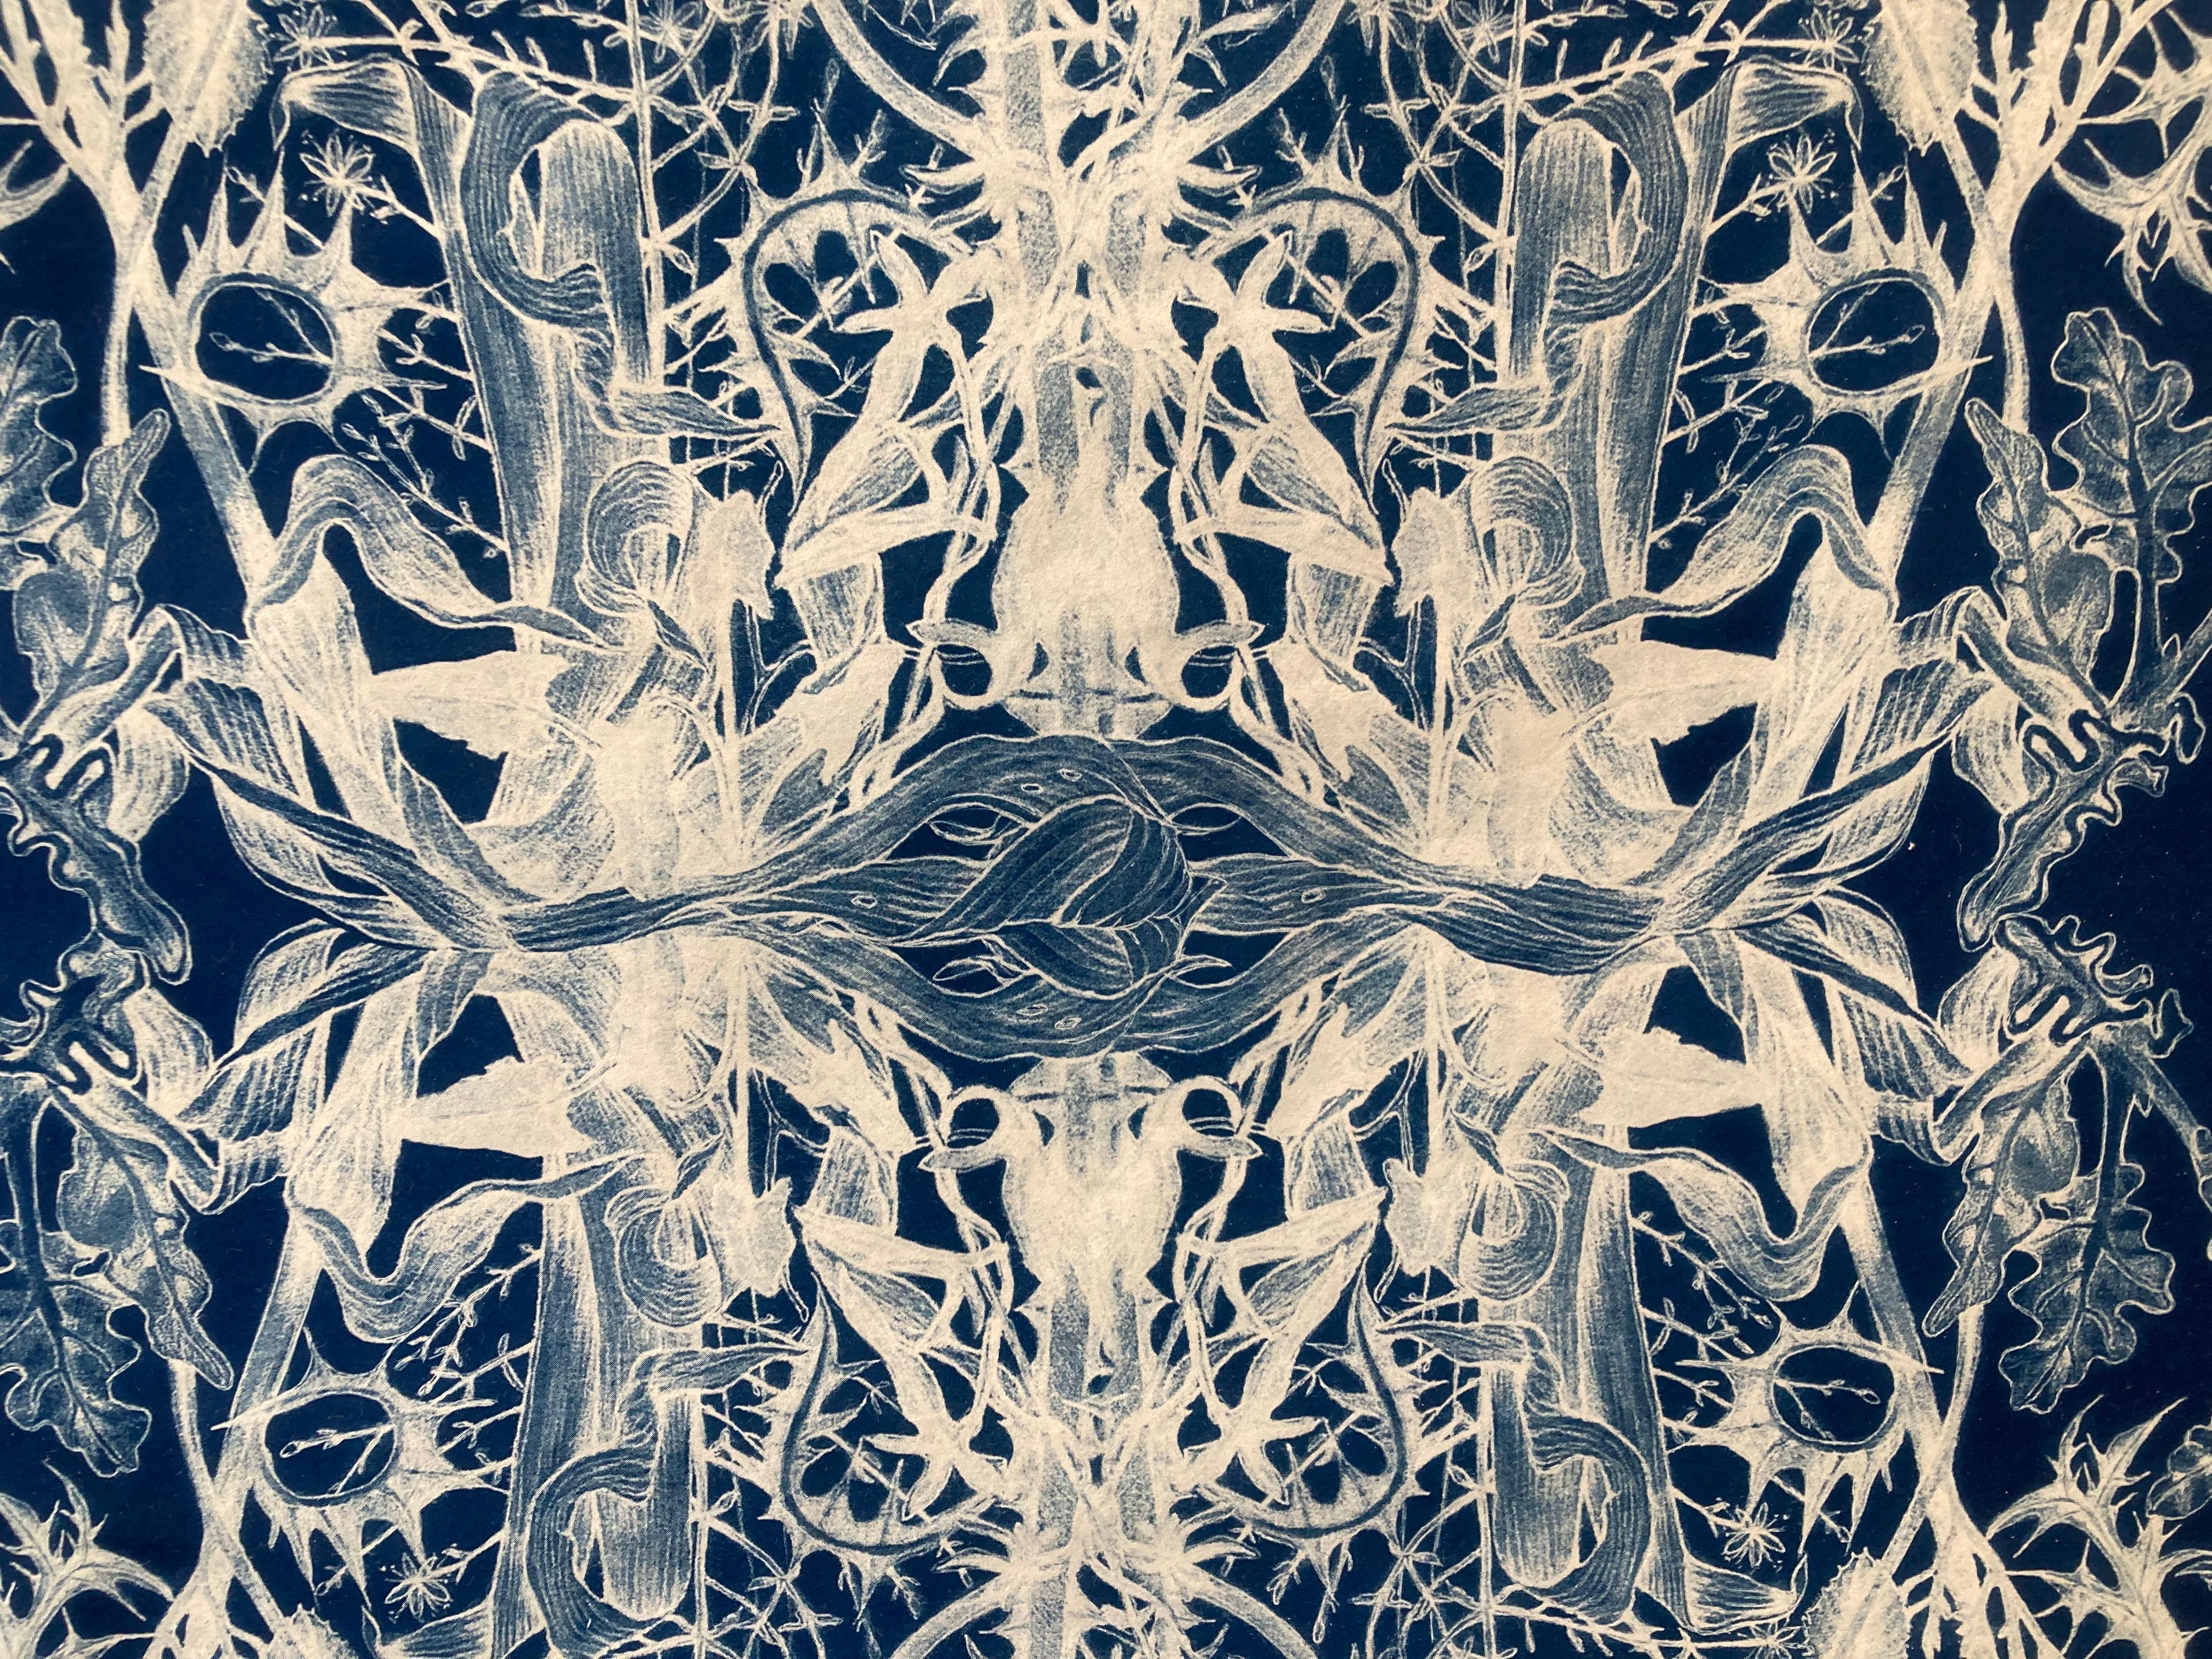 „Botanical Rhapsody II“  Realistisches/abstraktes Blumenmuster Fotografie Blau/Weiß (Violett), Still-Life Print, von Judith Allen-Efstathiou